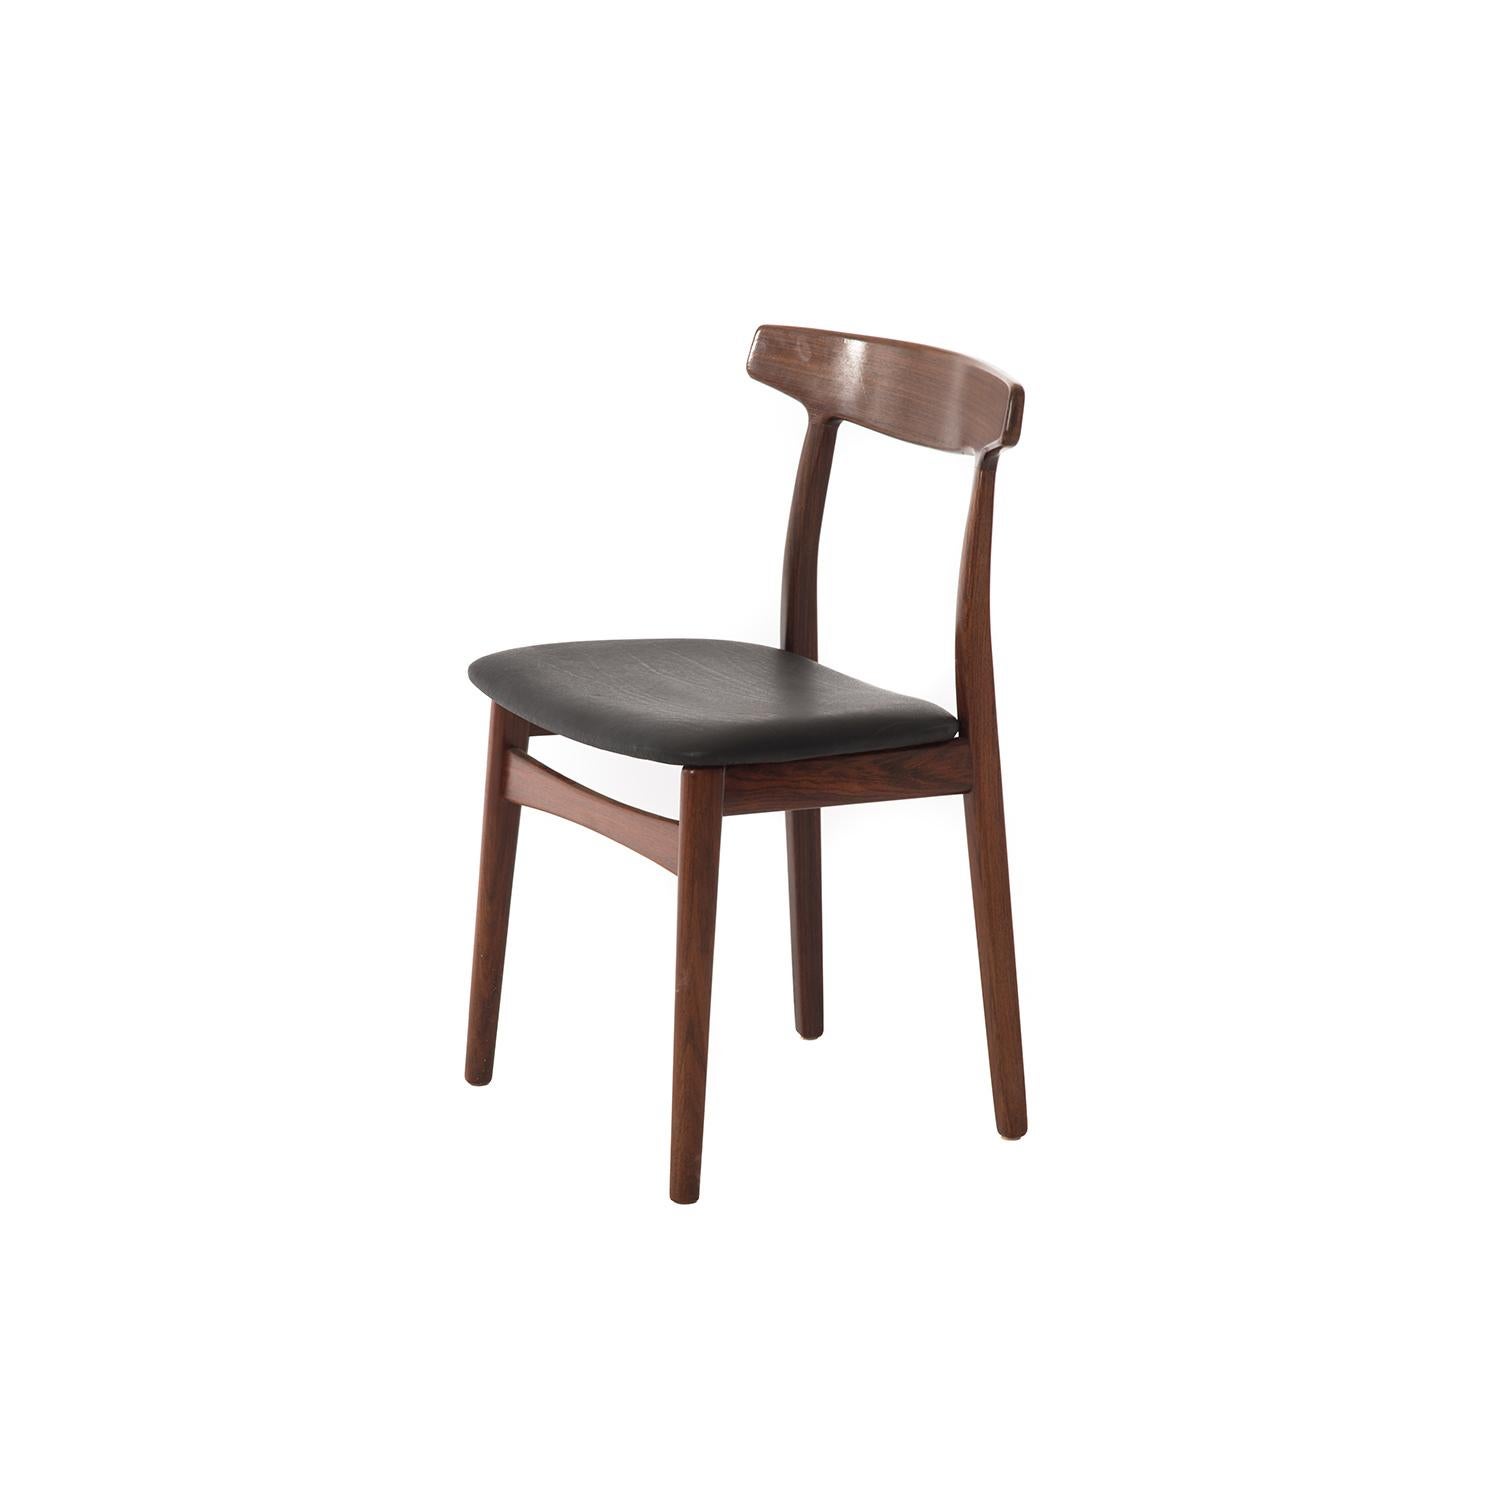 Dieser skulpturale Stuhl verleiht jedem Raum Eleganz. Halbglänzende Lackierung mit mattschwarzem Ledersitz. Entworfen von H. Kjaernulf.

Die professionelle und fachgerechte Restaurierung von Möbeln ist ein fester Bestandteil unserer täglichen